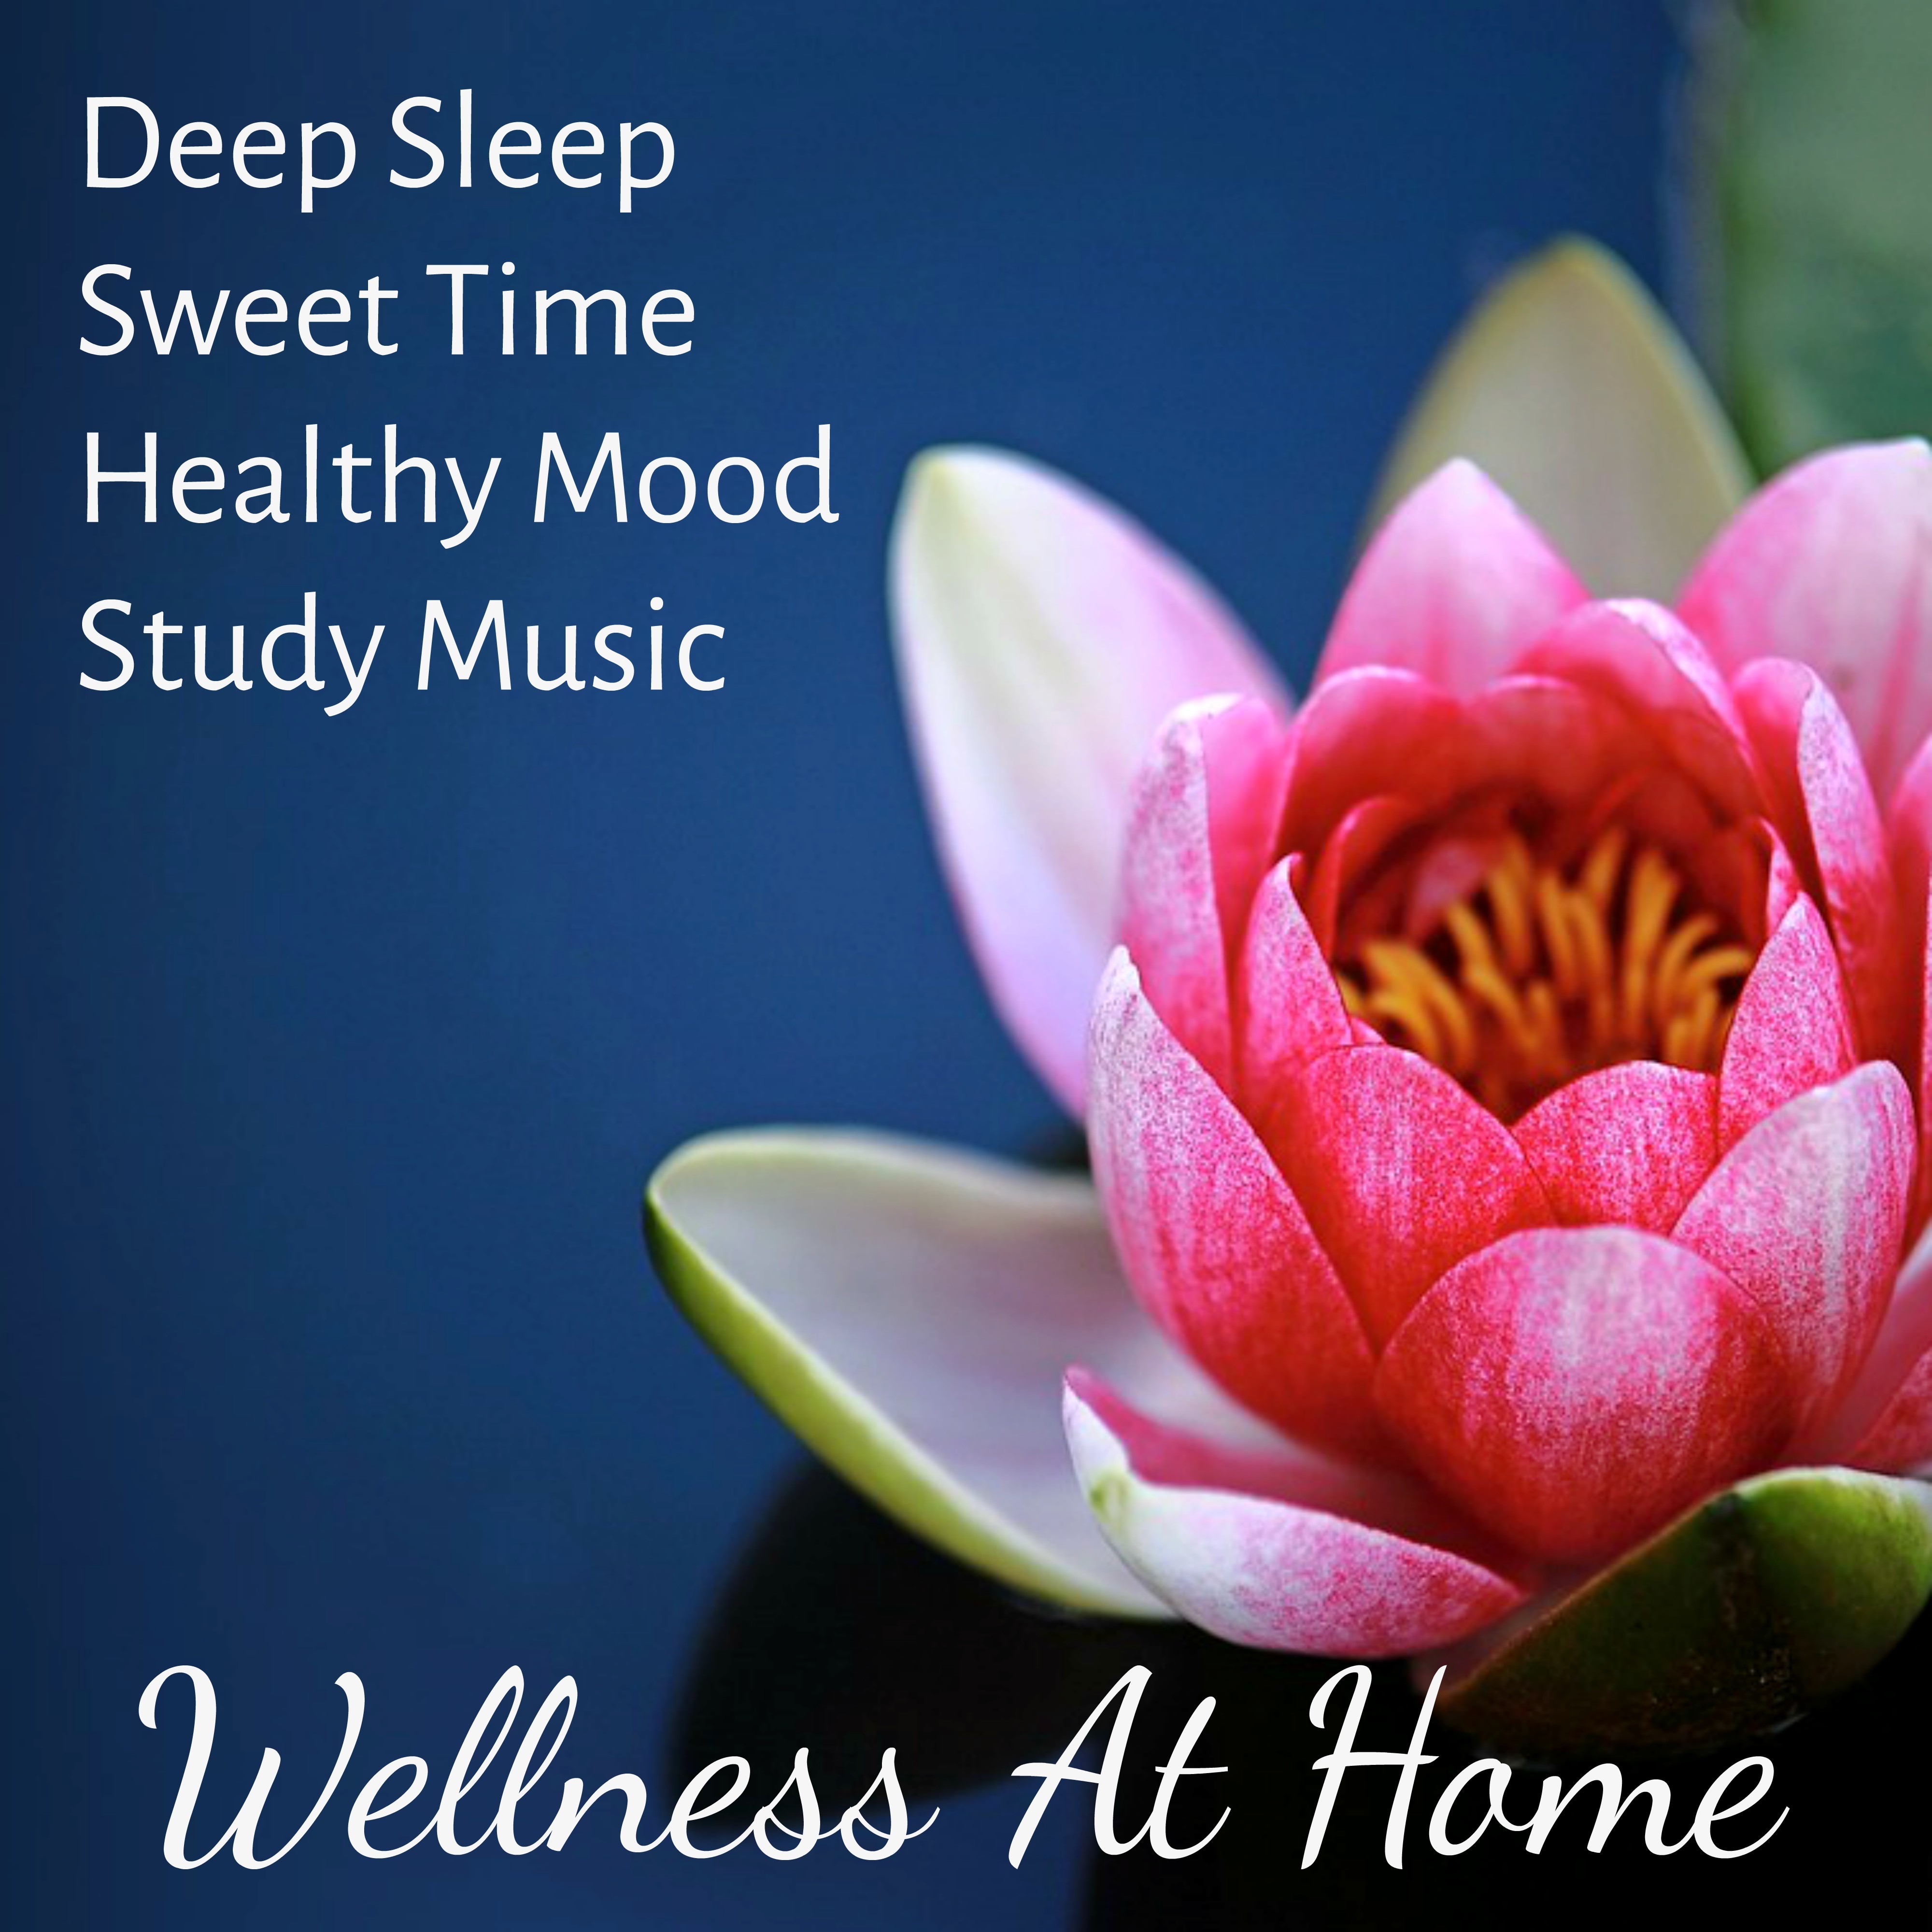 Wellness At Home - Deep Sleep Study Sweet Time Healthy Mood Music for Inner Stillness Zen Garden Never Stop